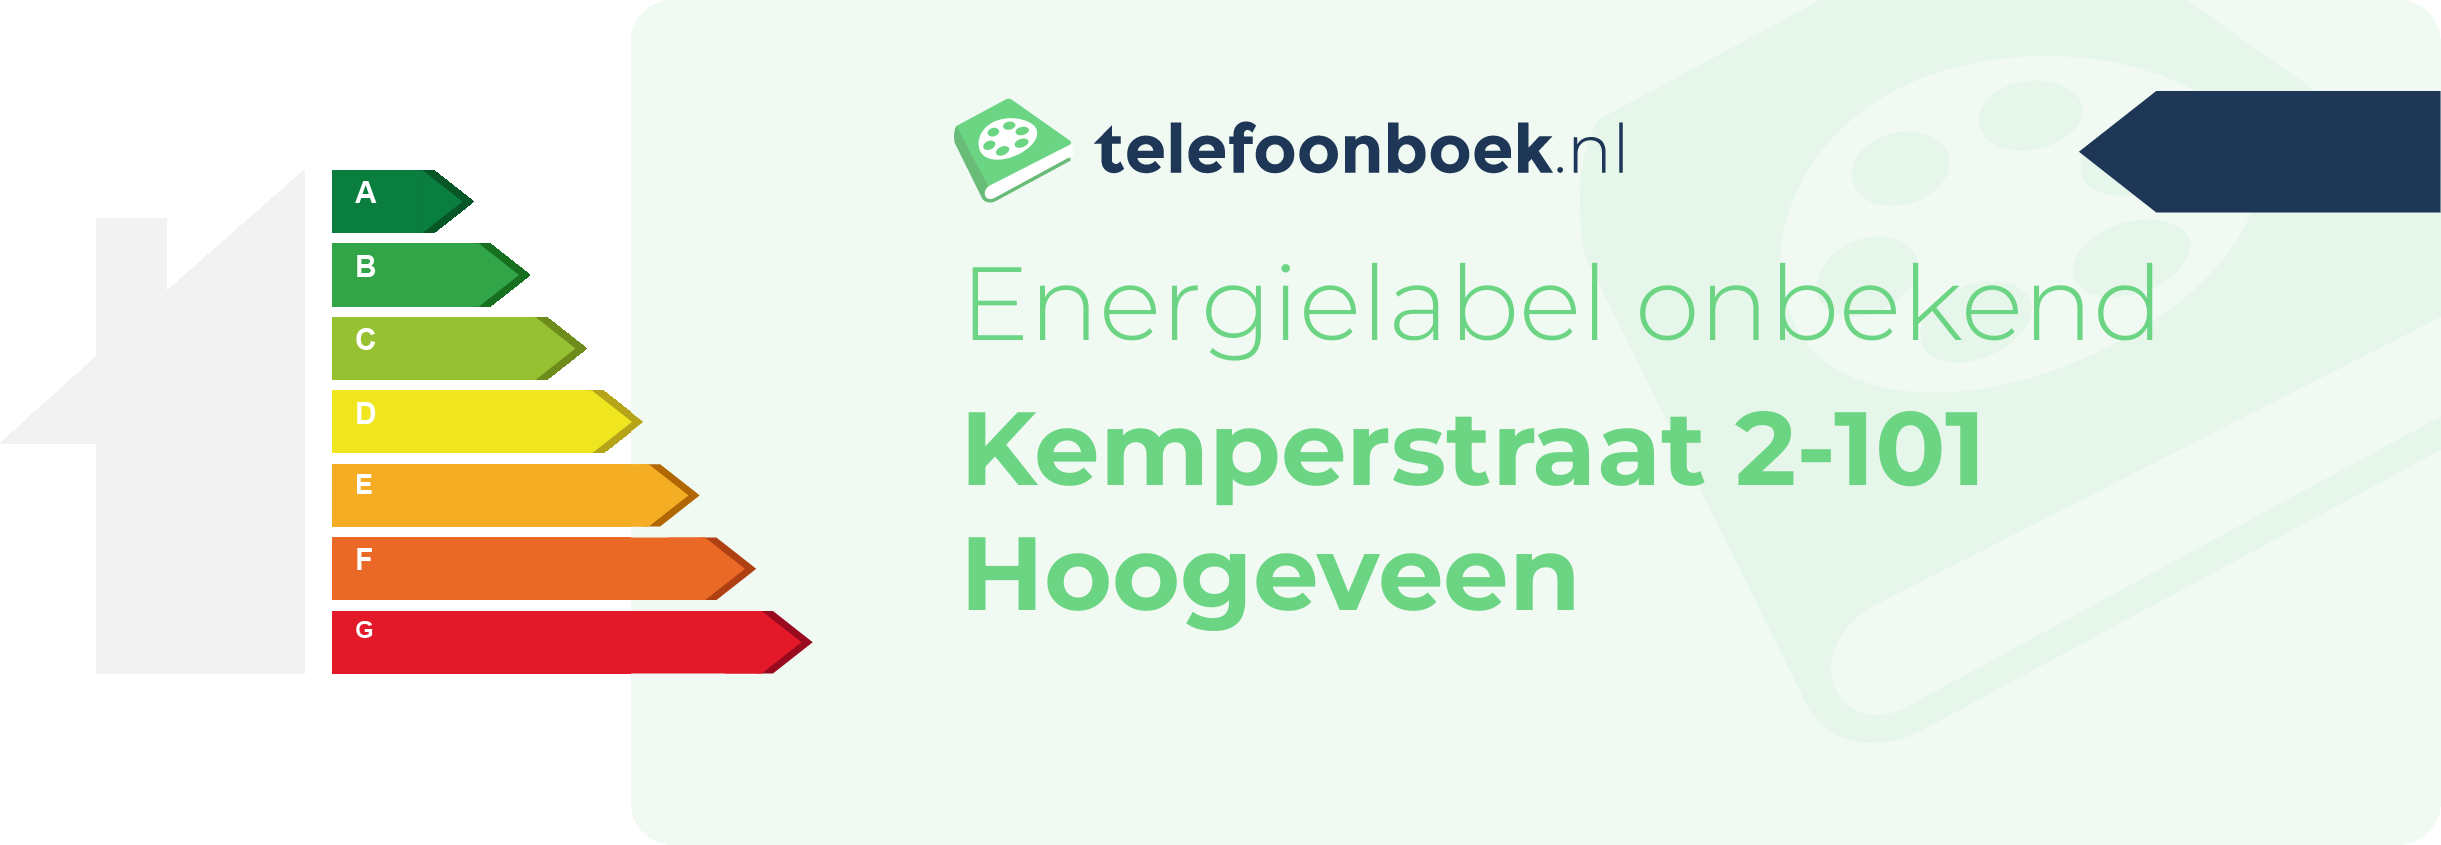 Energielabel Kemperstraat 2-101 Hoogeveen